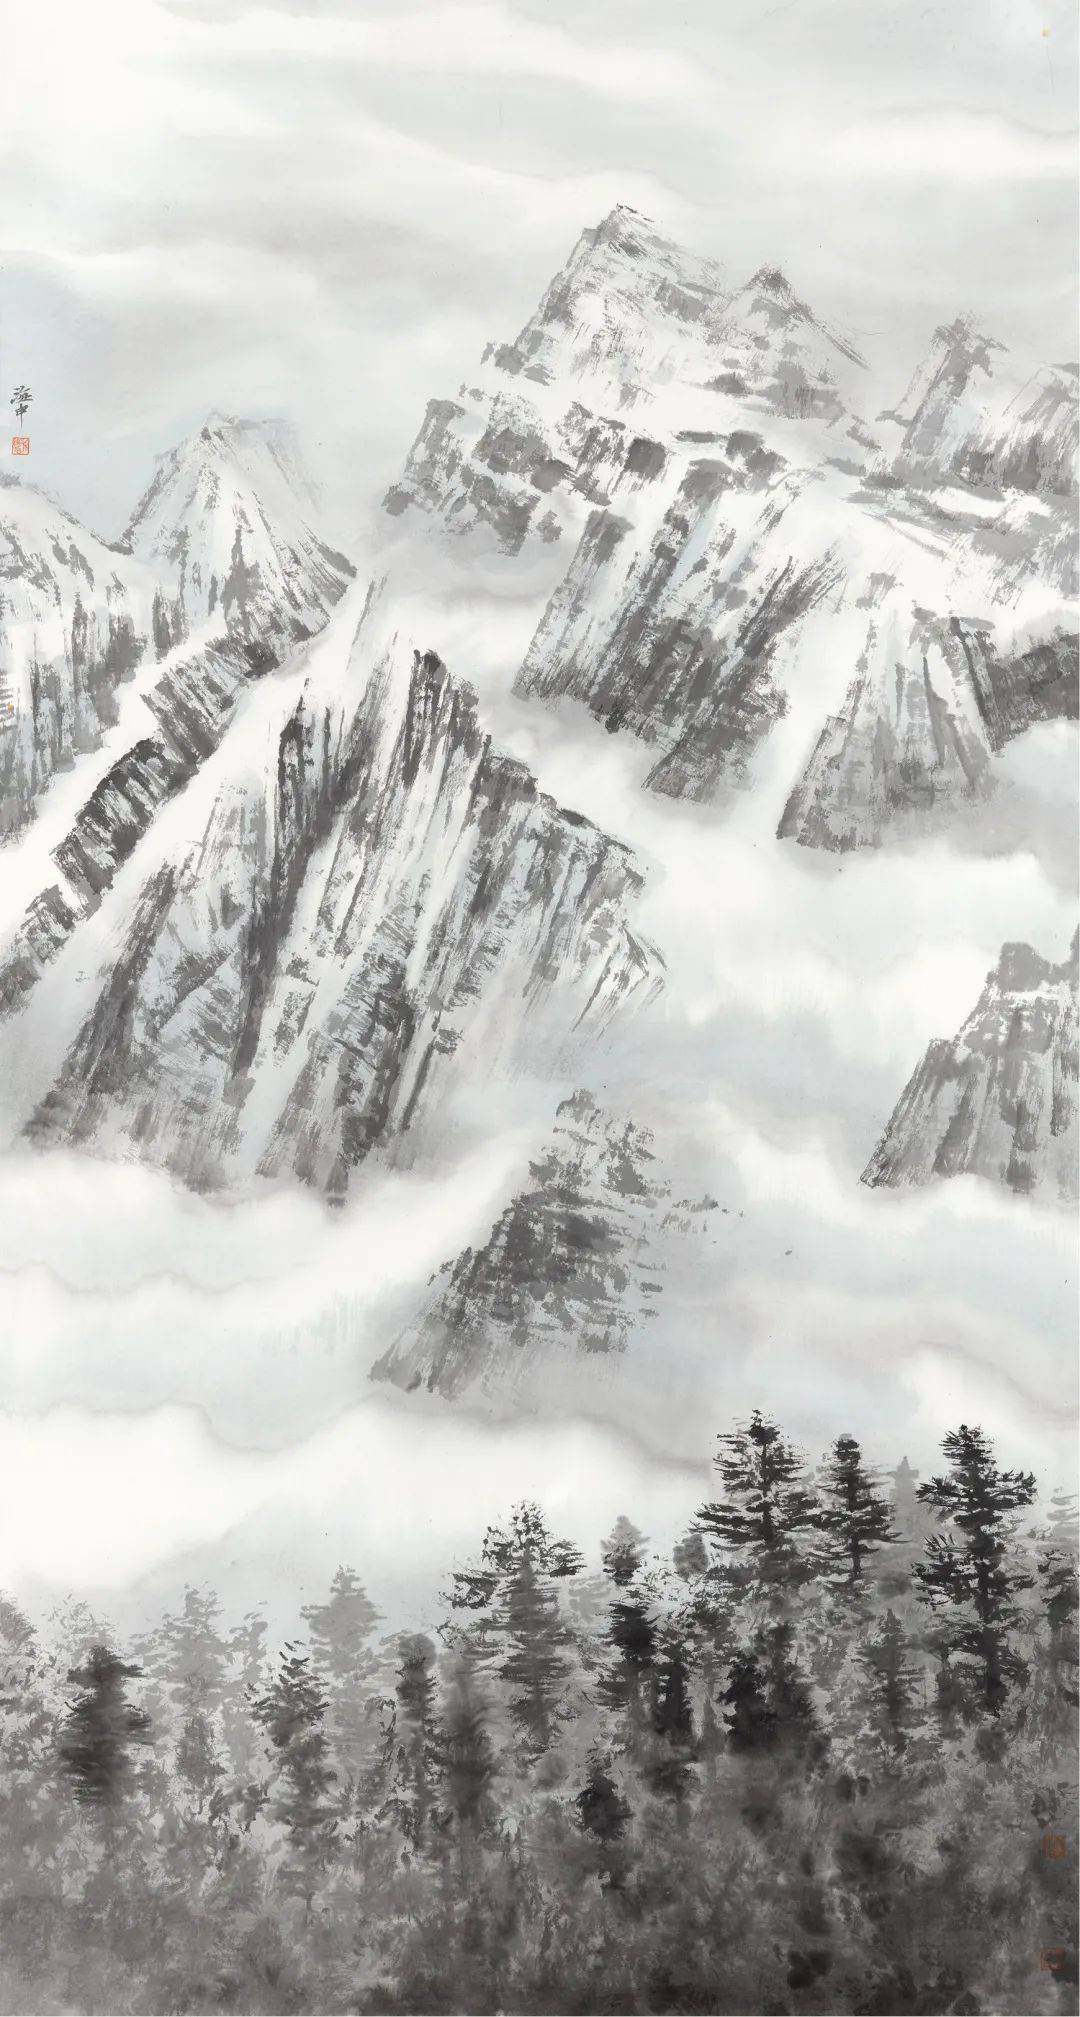 《大国脊梁61圣境峰光—高原雪山画派作品展》陕西 西安开幕